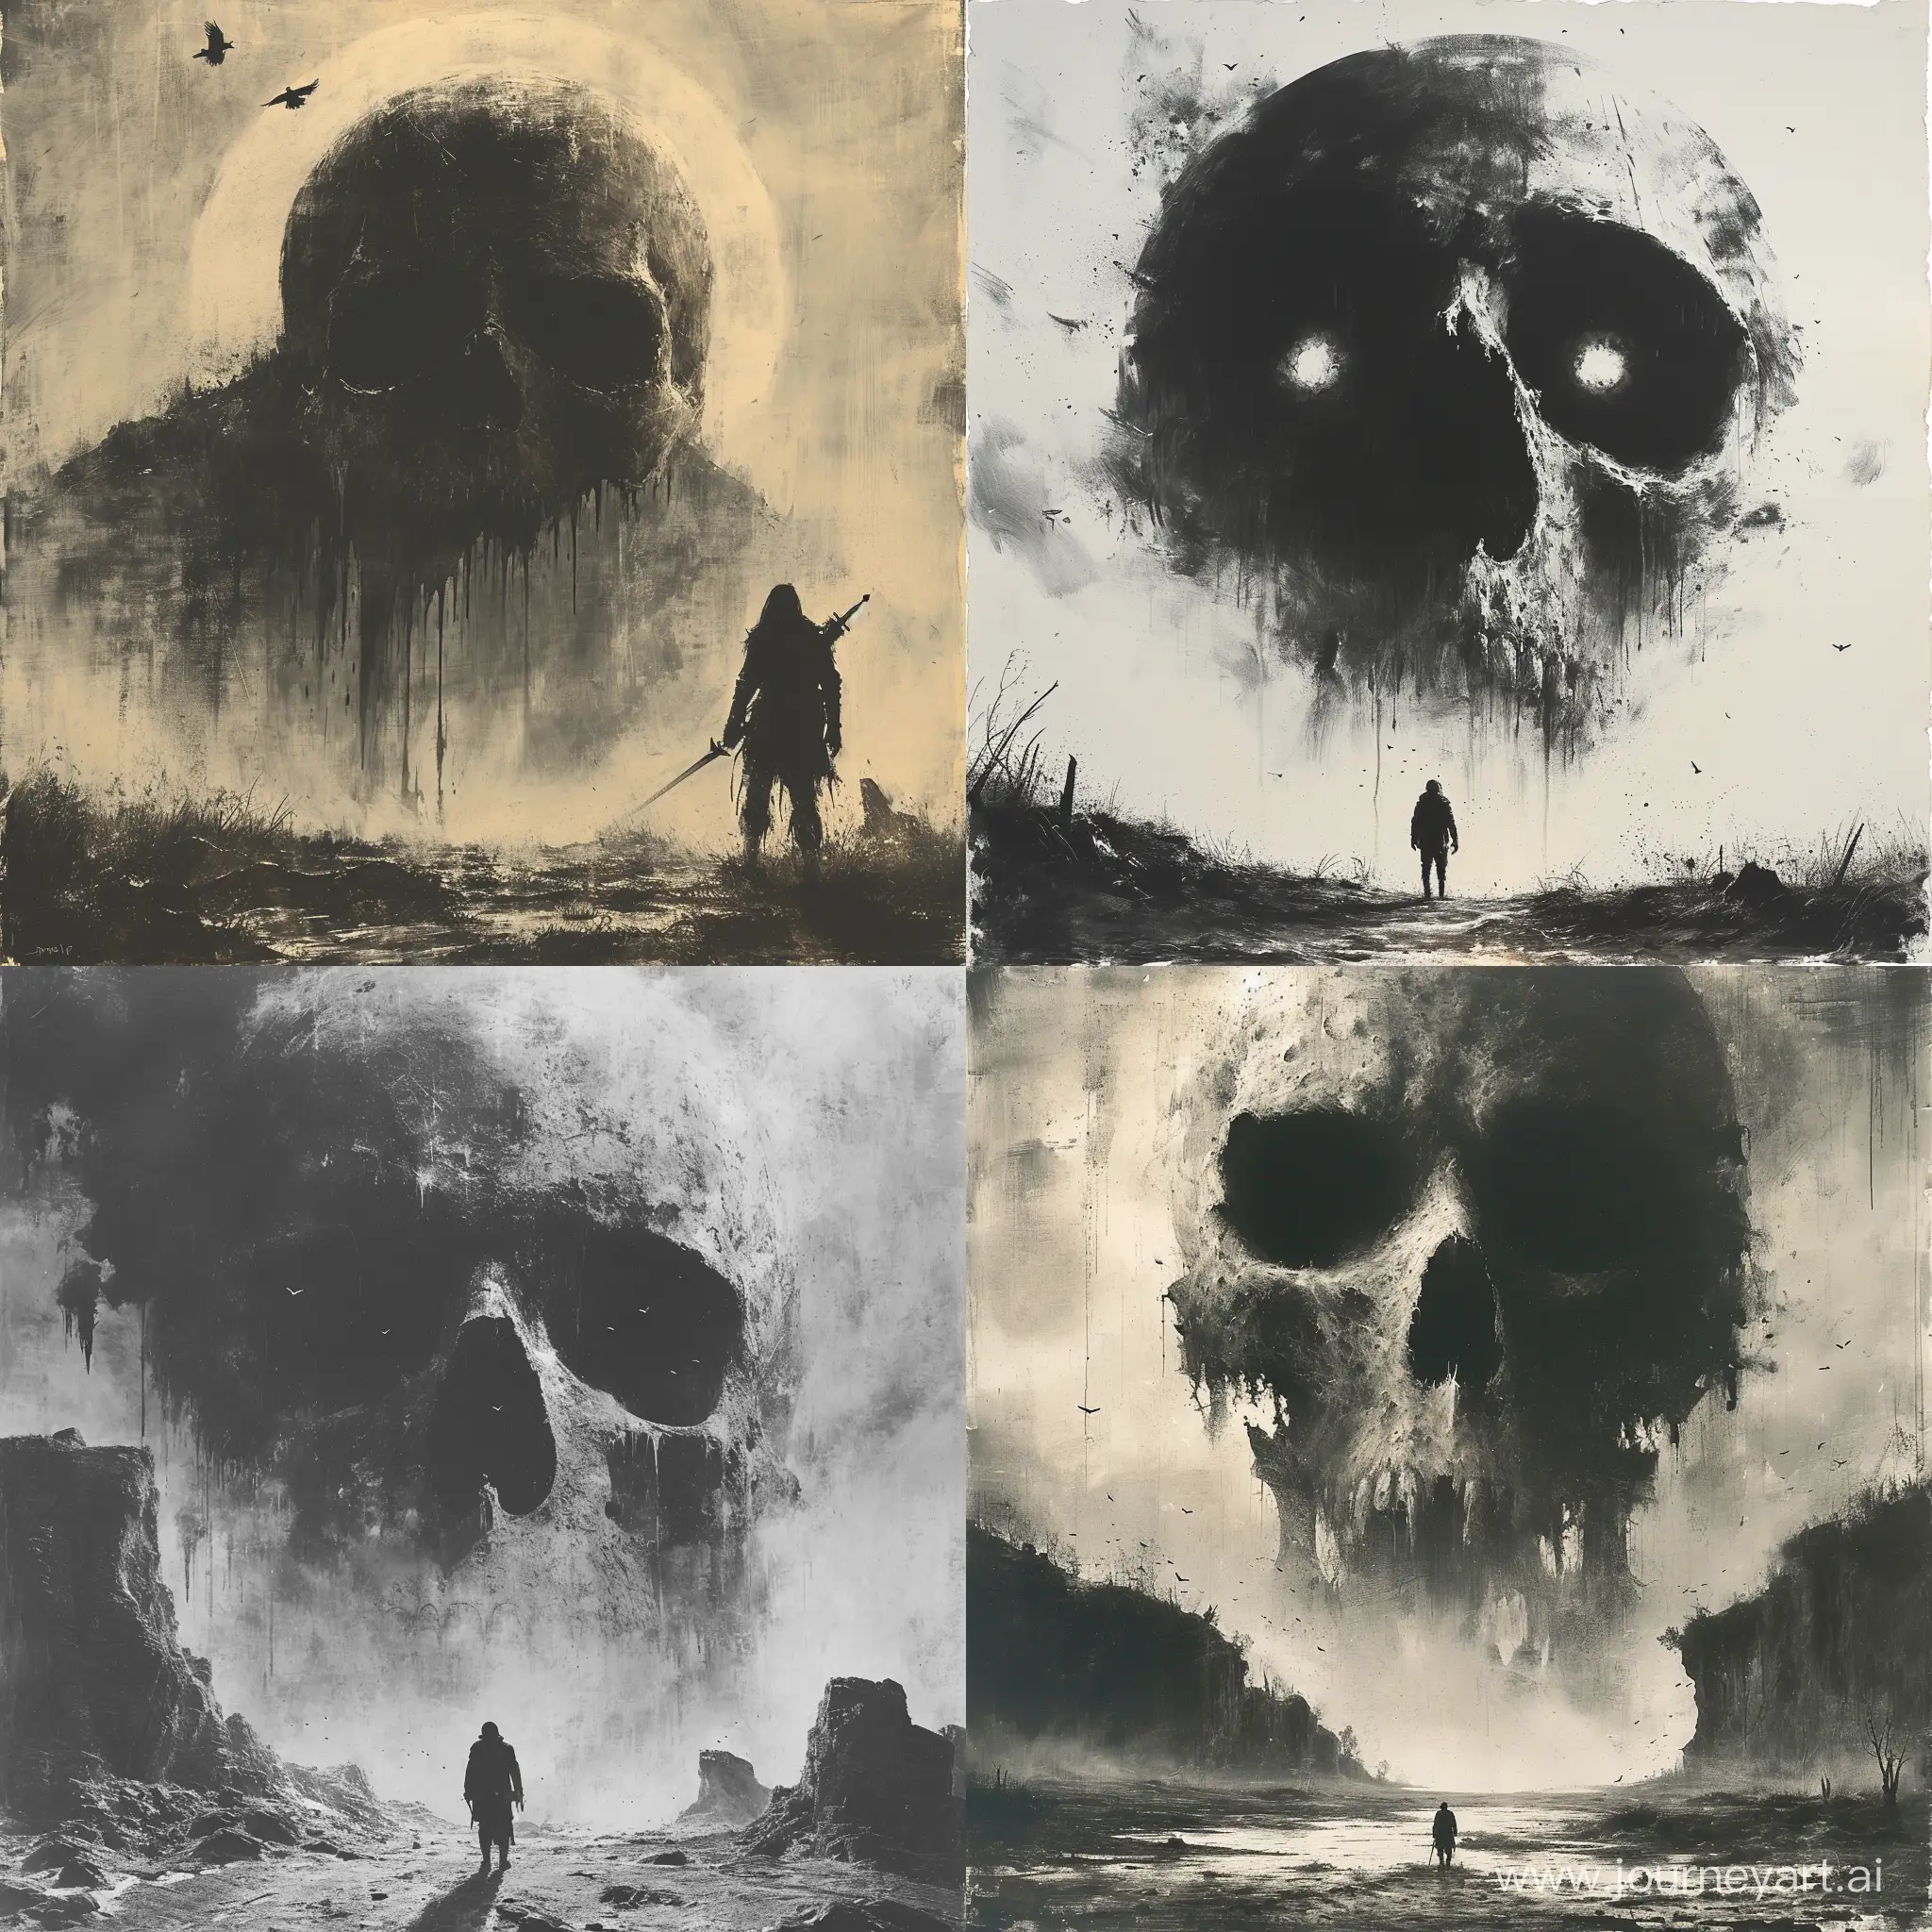 Warrior-Confronts-Giant-Skull-in-Desolate-Dusk-Landscape